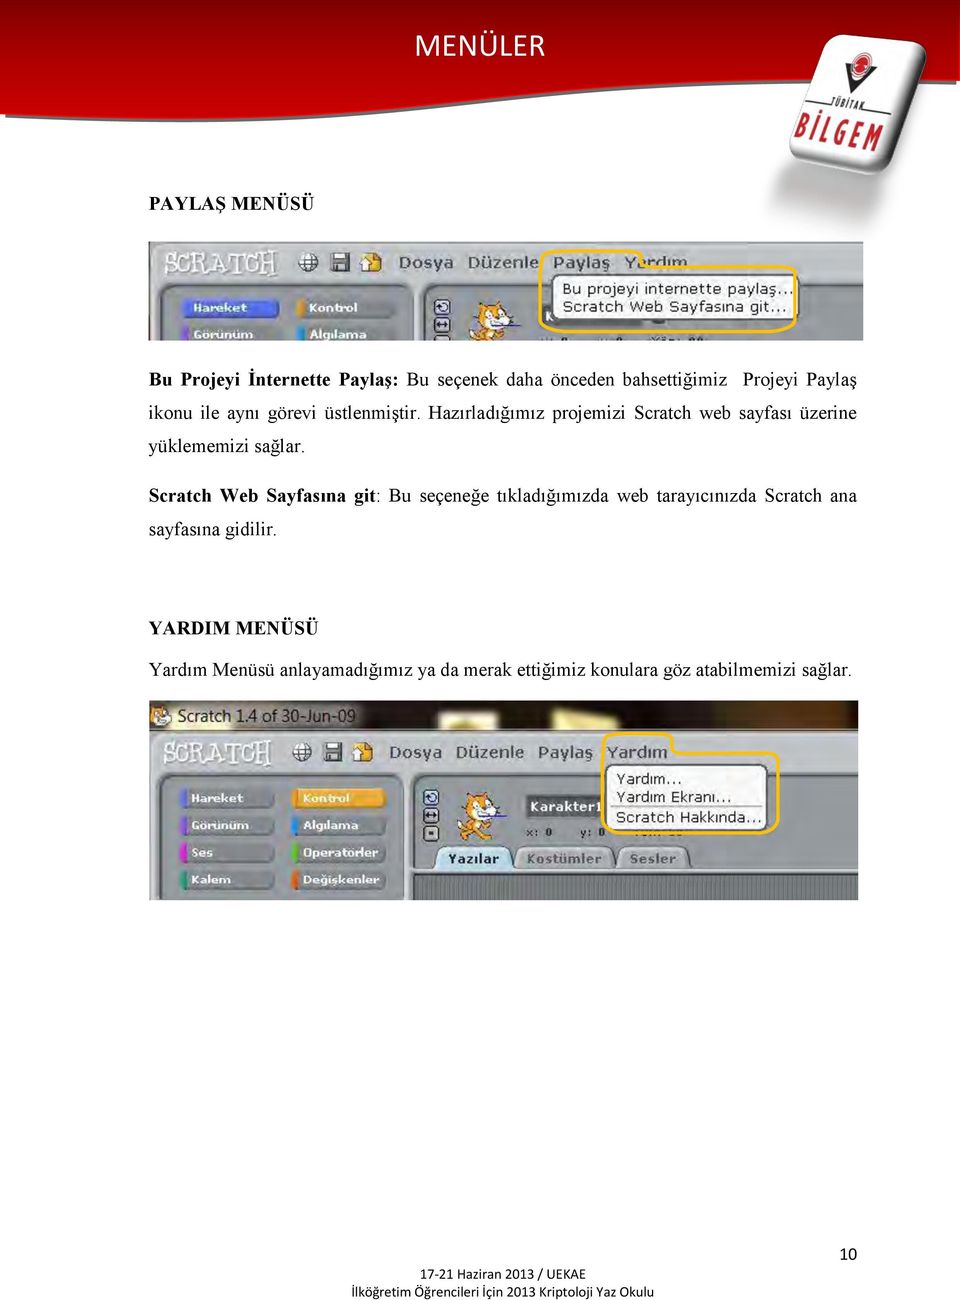 Hazırladığımız projemizi Scratch web sayfası üzerine yüklememizi sağlar.